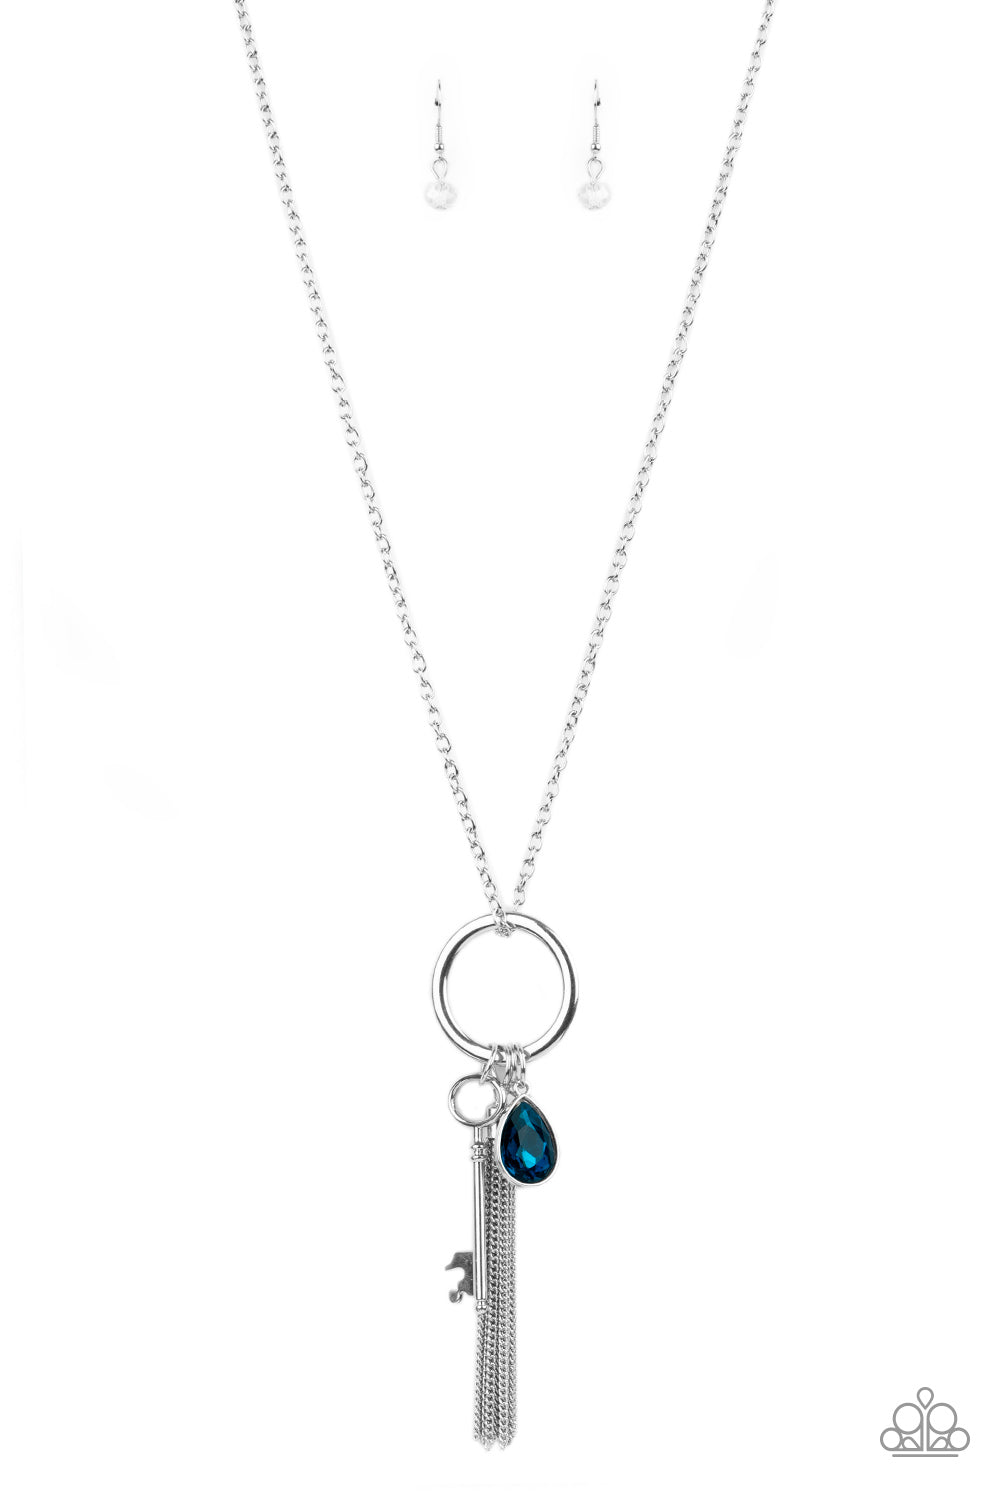 Paparazzi - Unlock Your Sparkle - Blue Necklace